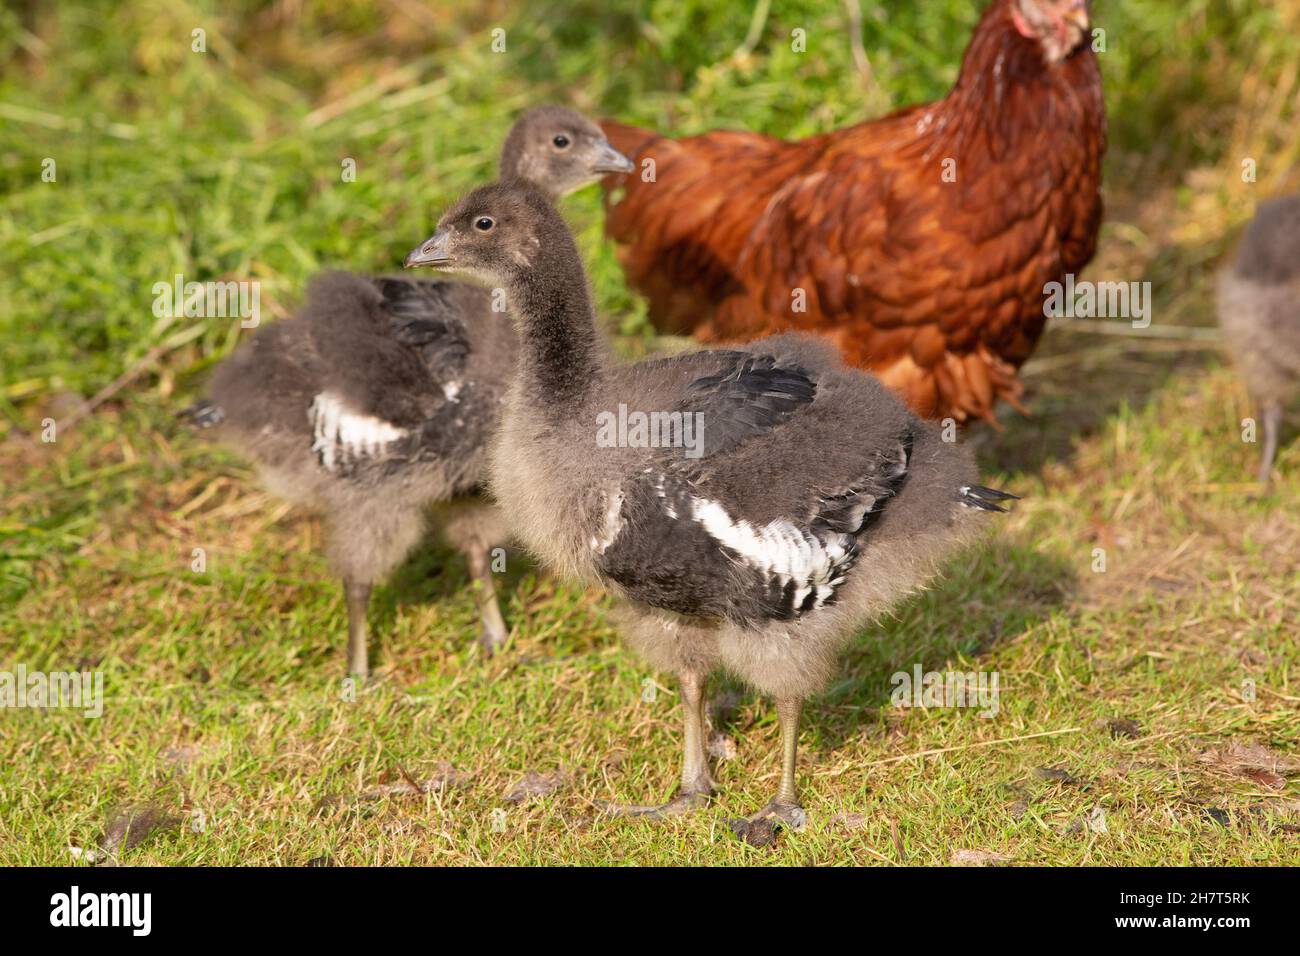 Geese de pecho rojo (Branta ruficollis). Aves inmaduras, juveniles, o goslings, ? días de edad siendo criado de crianza por una gallina de la burodia doméstica, en el fondo. Foto de stock